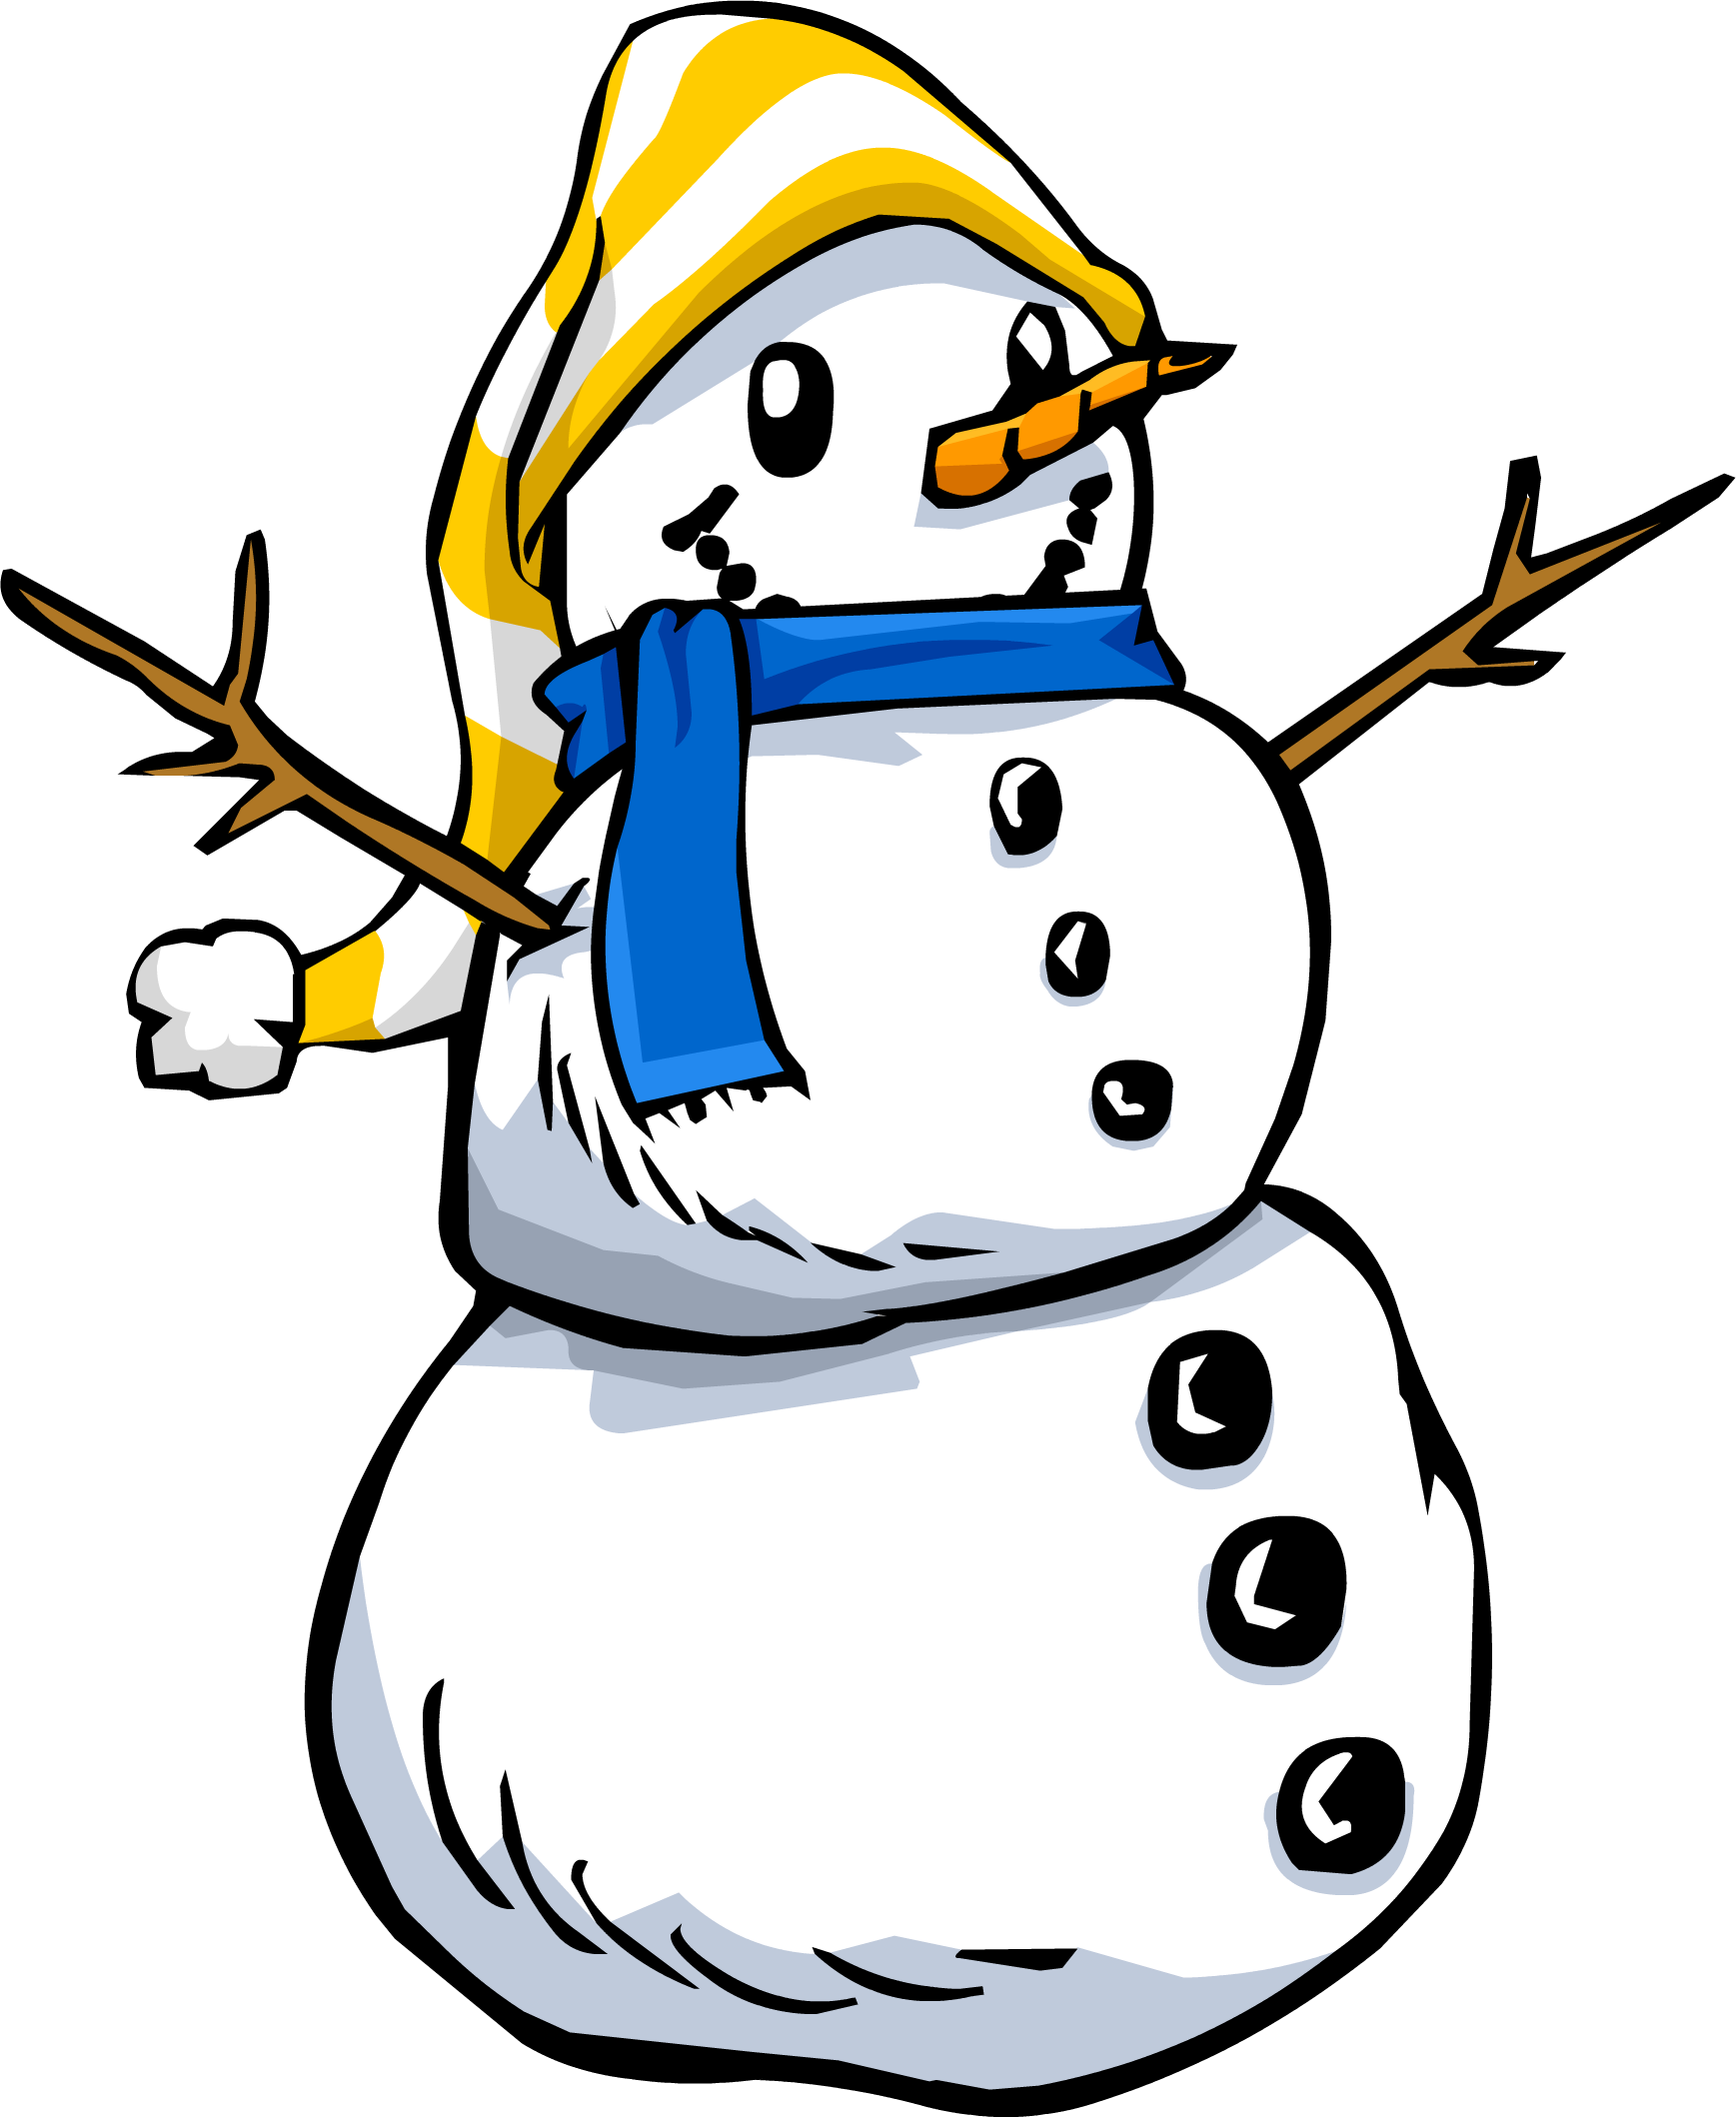 Snowman Sprite 003 - Snowman Transparent (1737x2118), Png Download